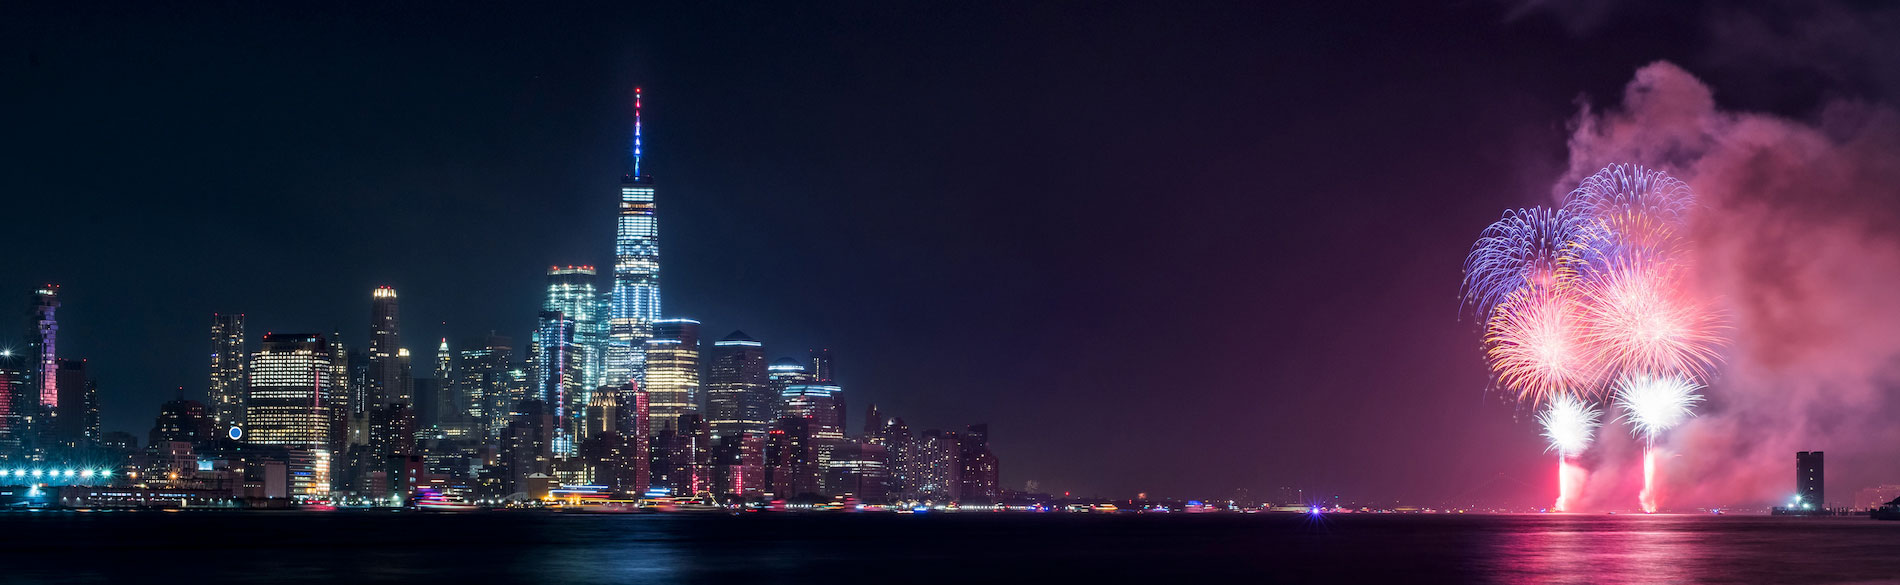 NYC Fireworks Skyline